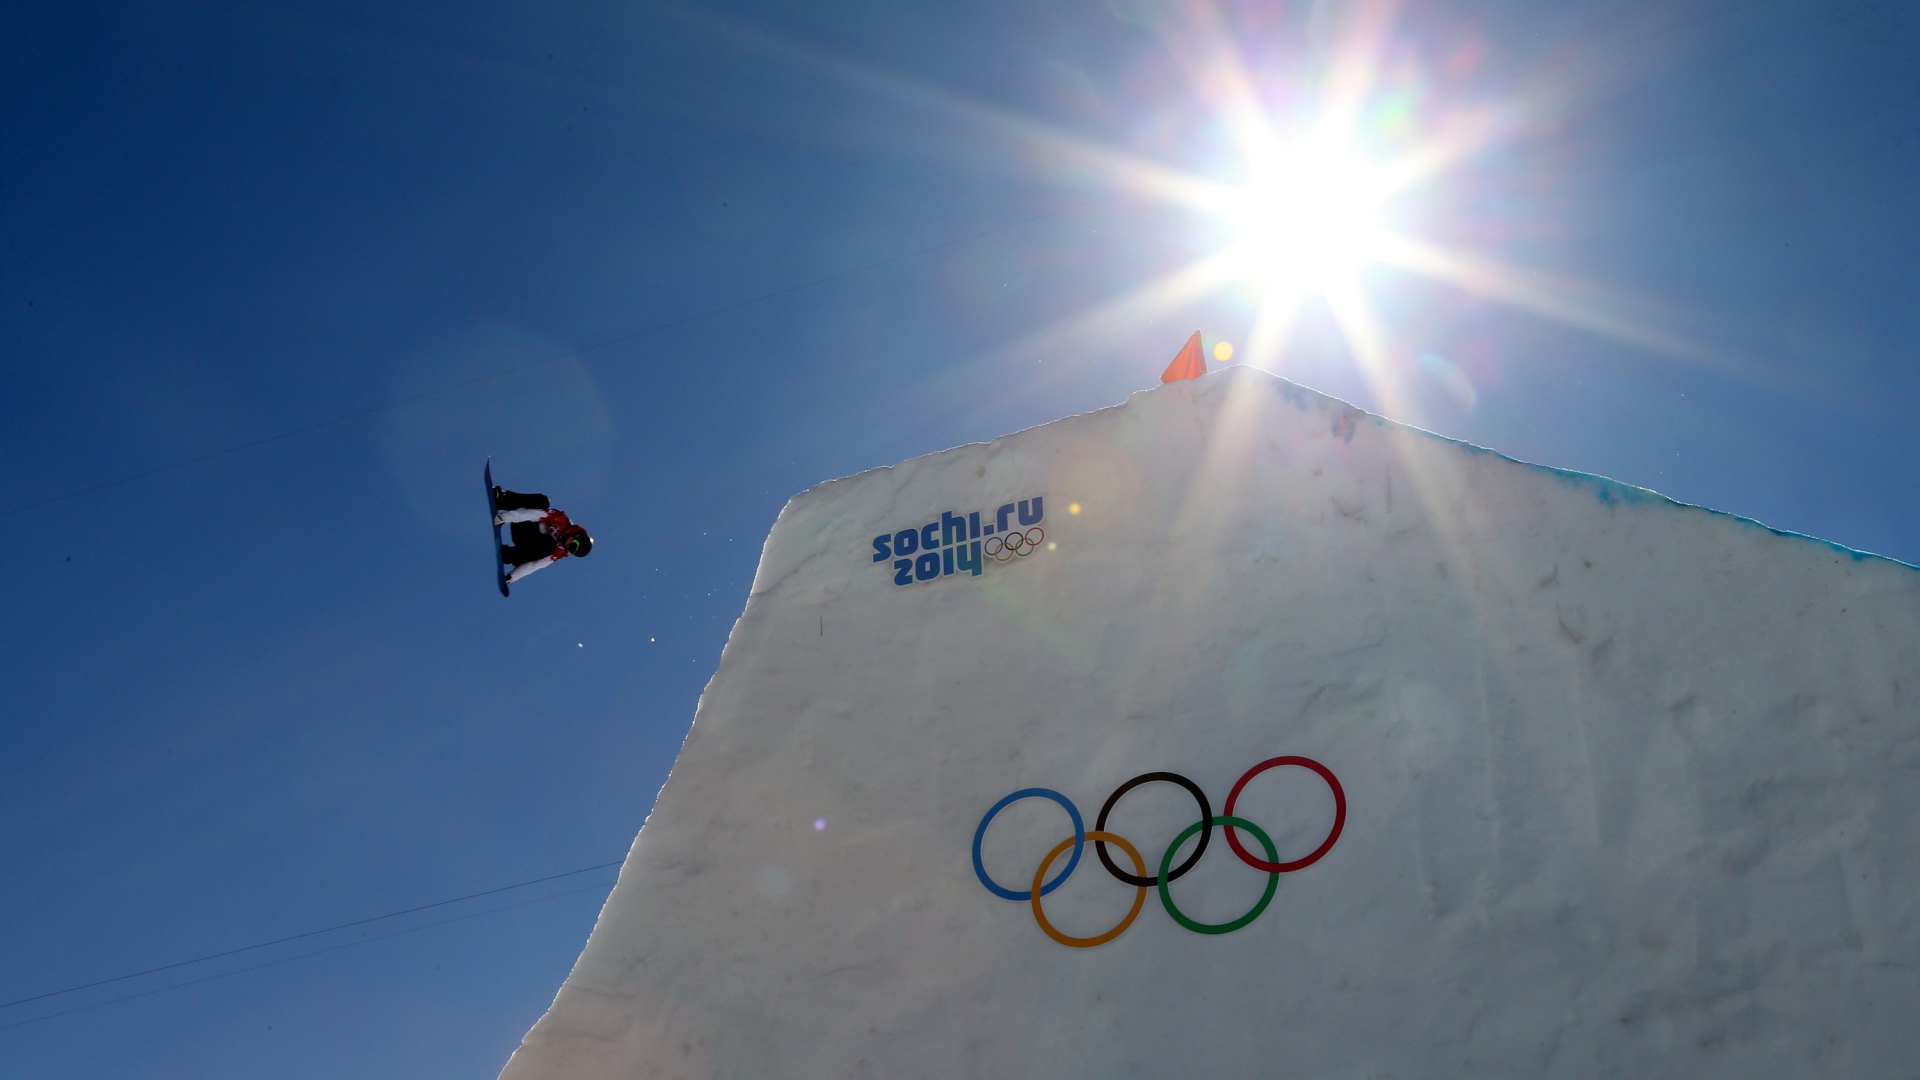 Трамплин на трассе для сноуборда на Олимпиаде в Сочи